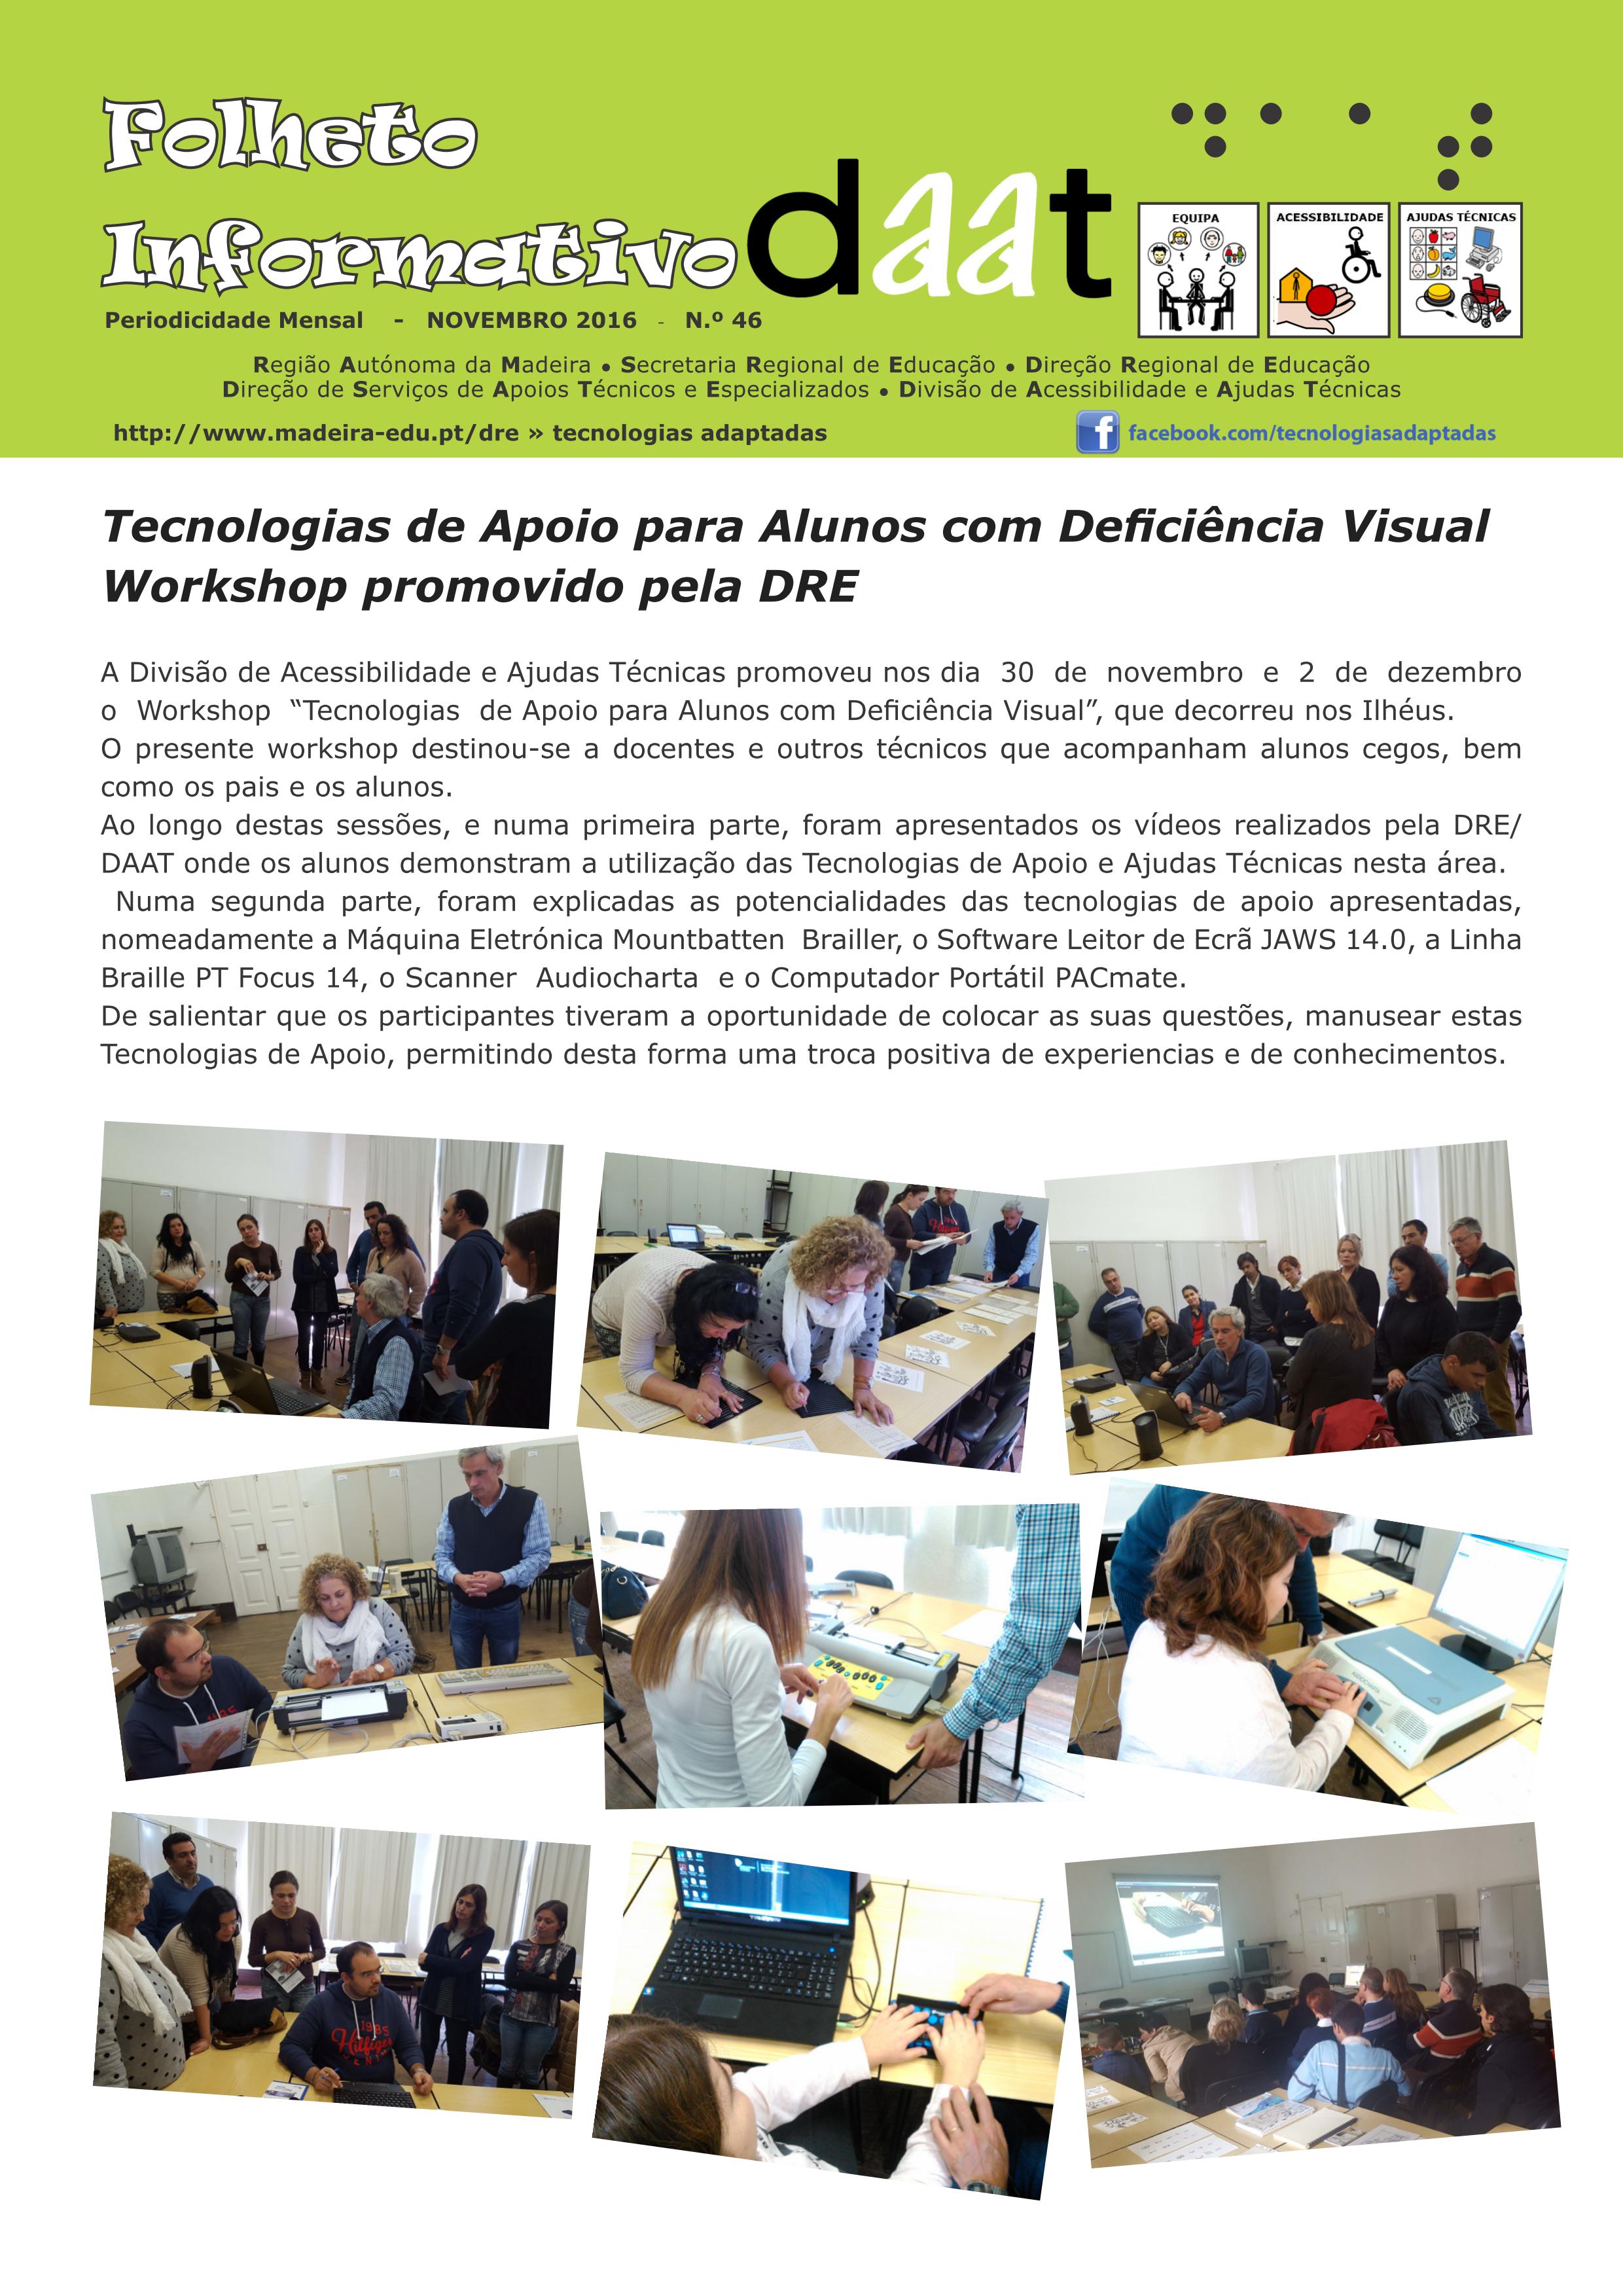 Tecnologias de Apoio para Alunos com Deficiência Visual Workshop promovido pela DRE